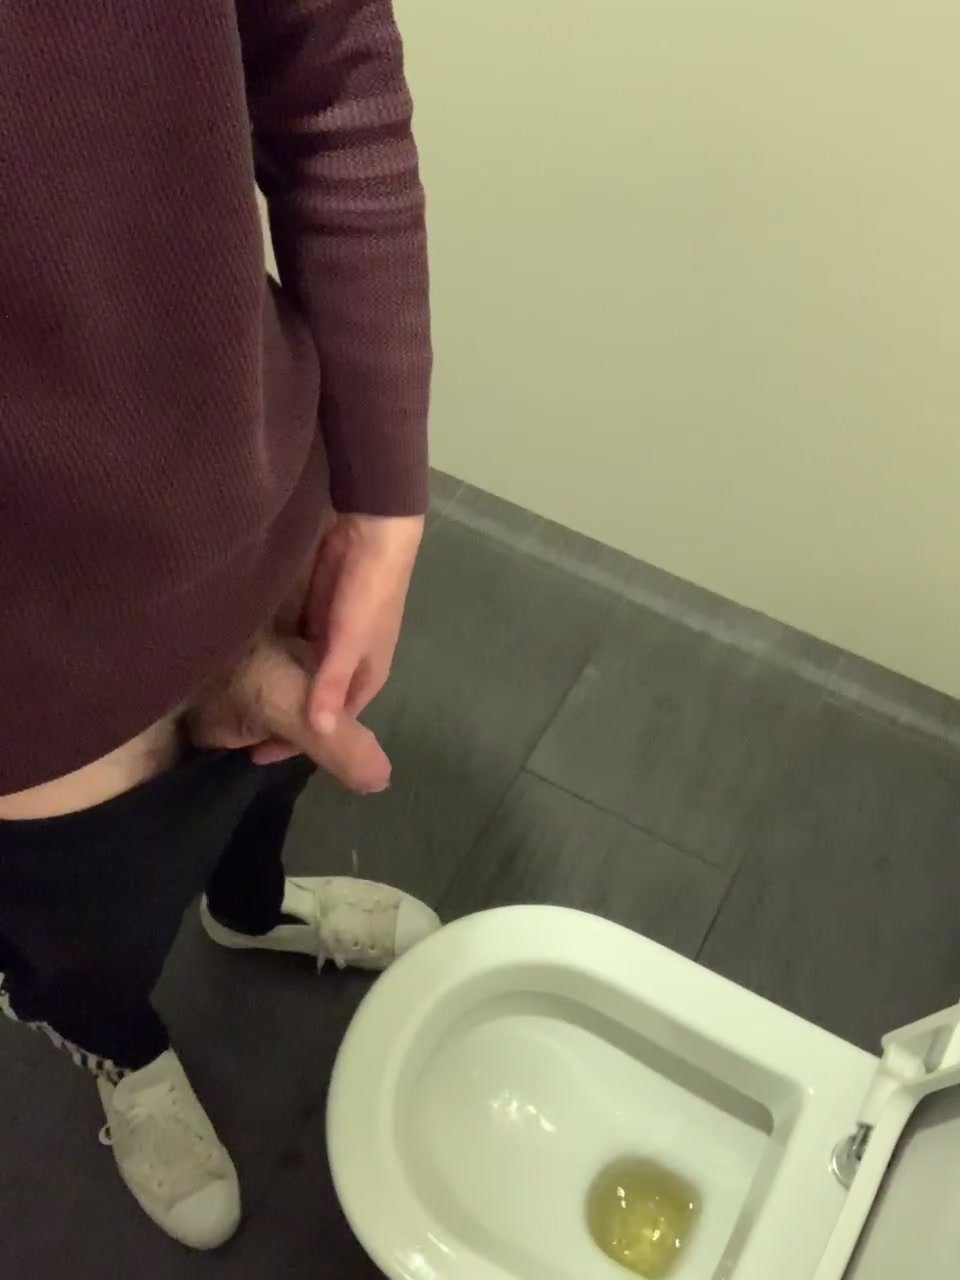 Public bathroom wank - video 2